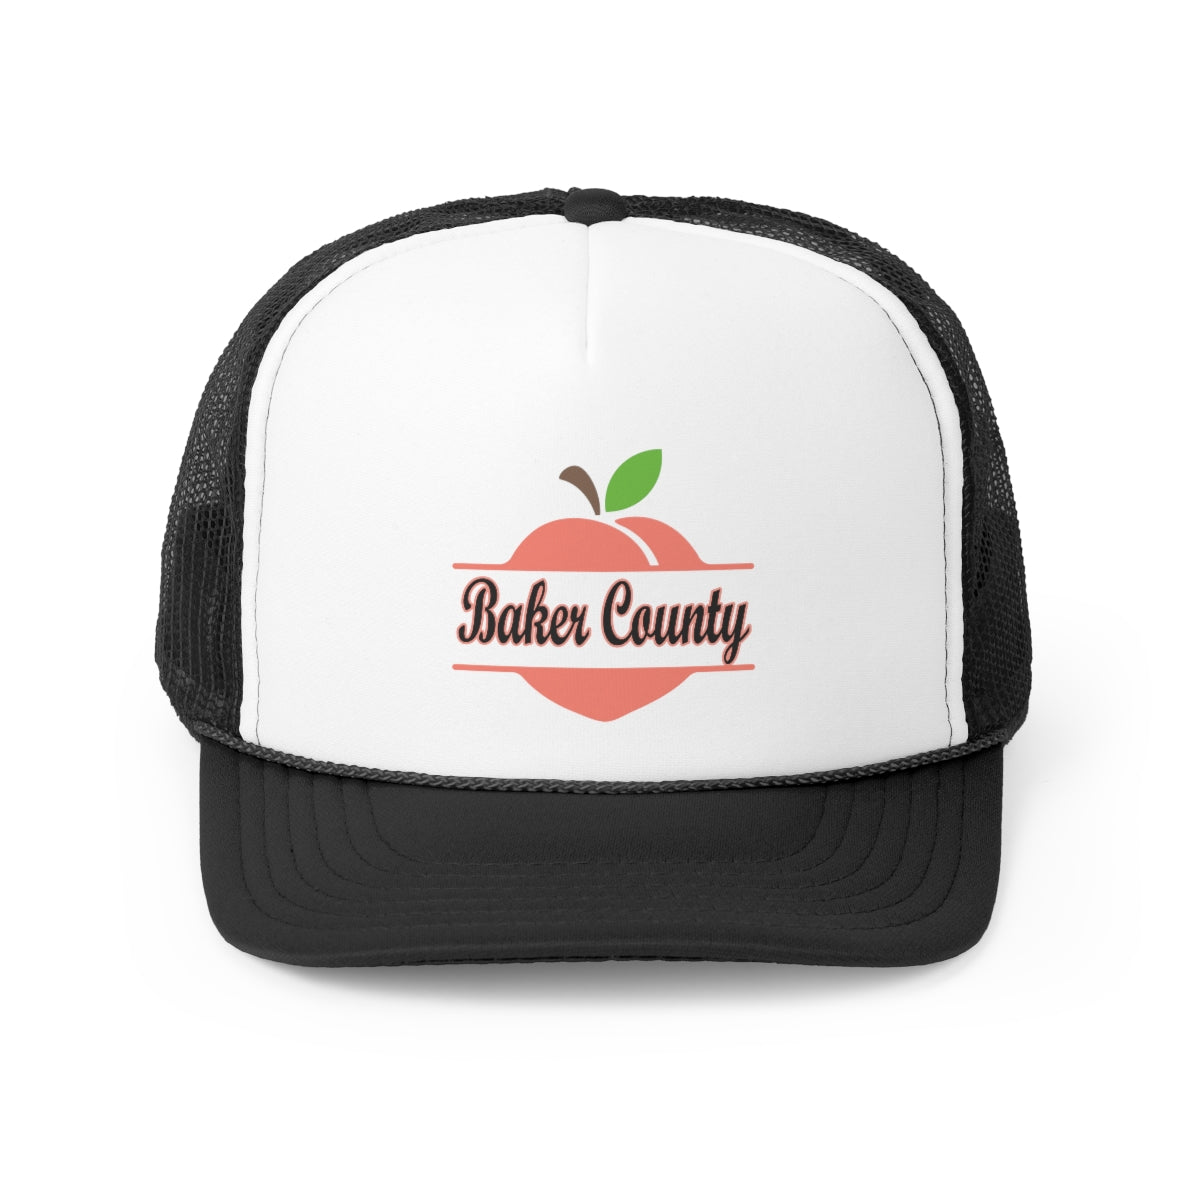 Baker County Georgia Trucker Cap